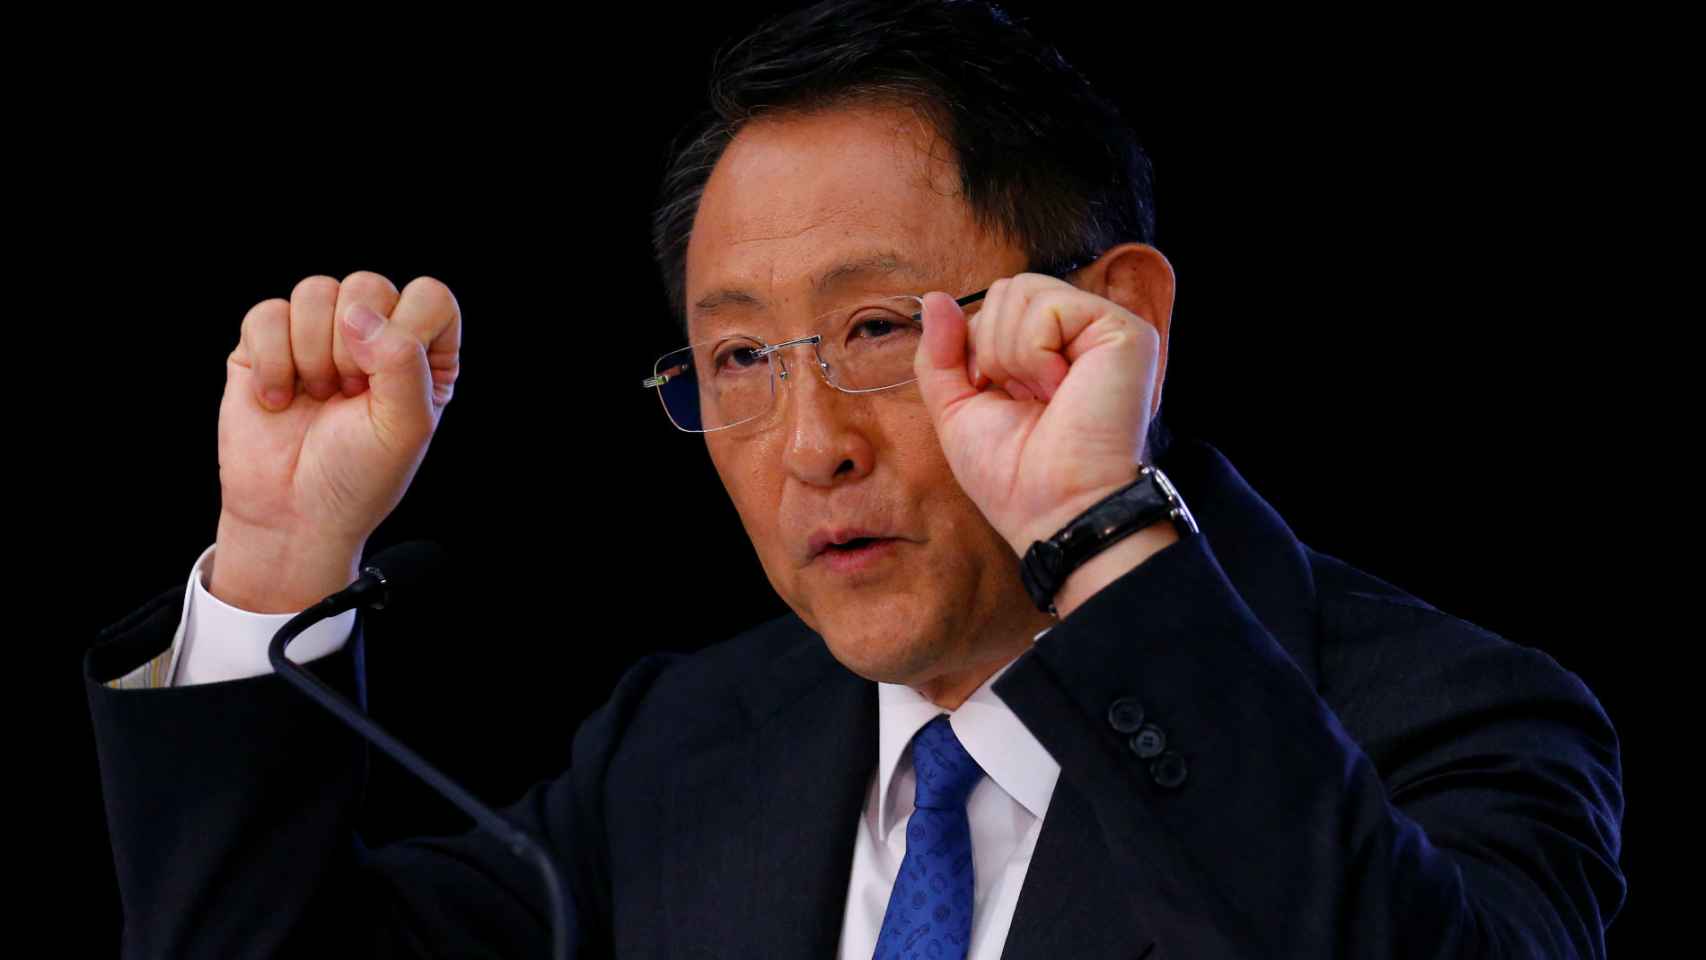 El presidente de Toyota, Akio Toyoda.